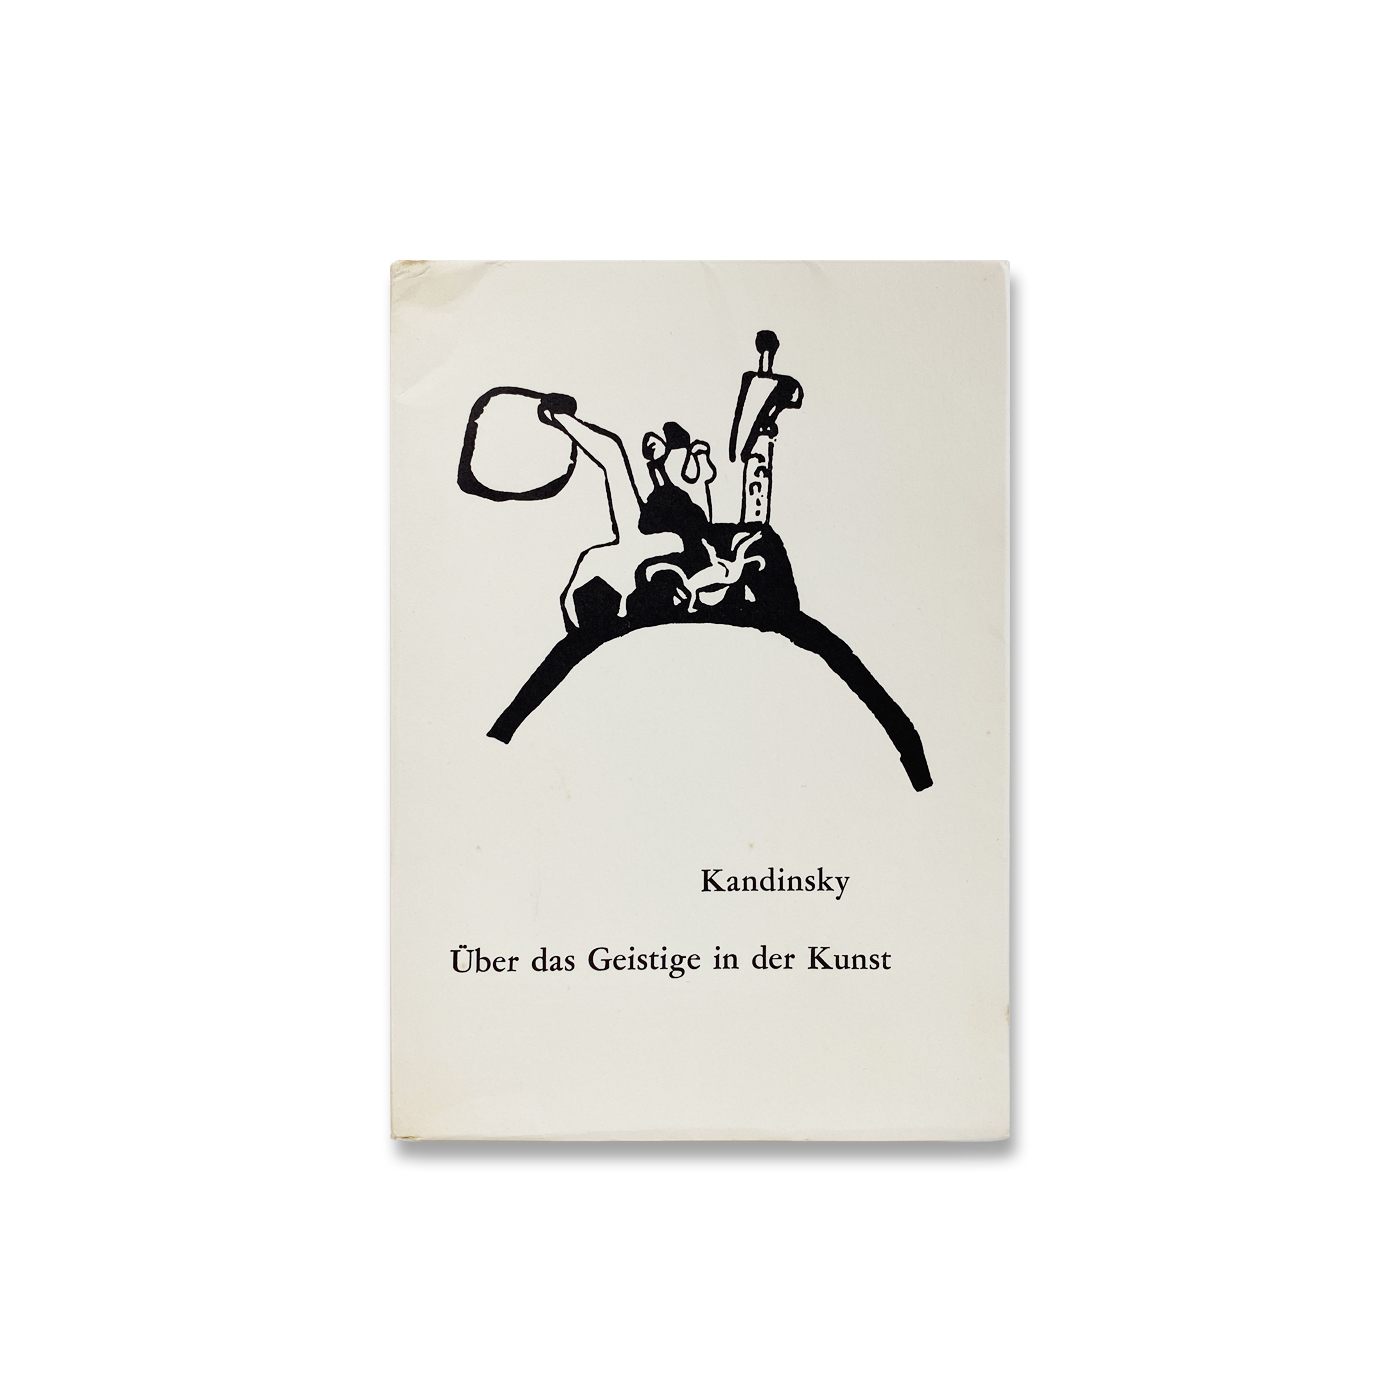 Kandinsky – Über das Geistige in der Kunst